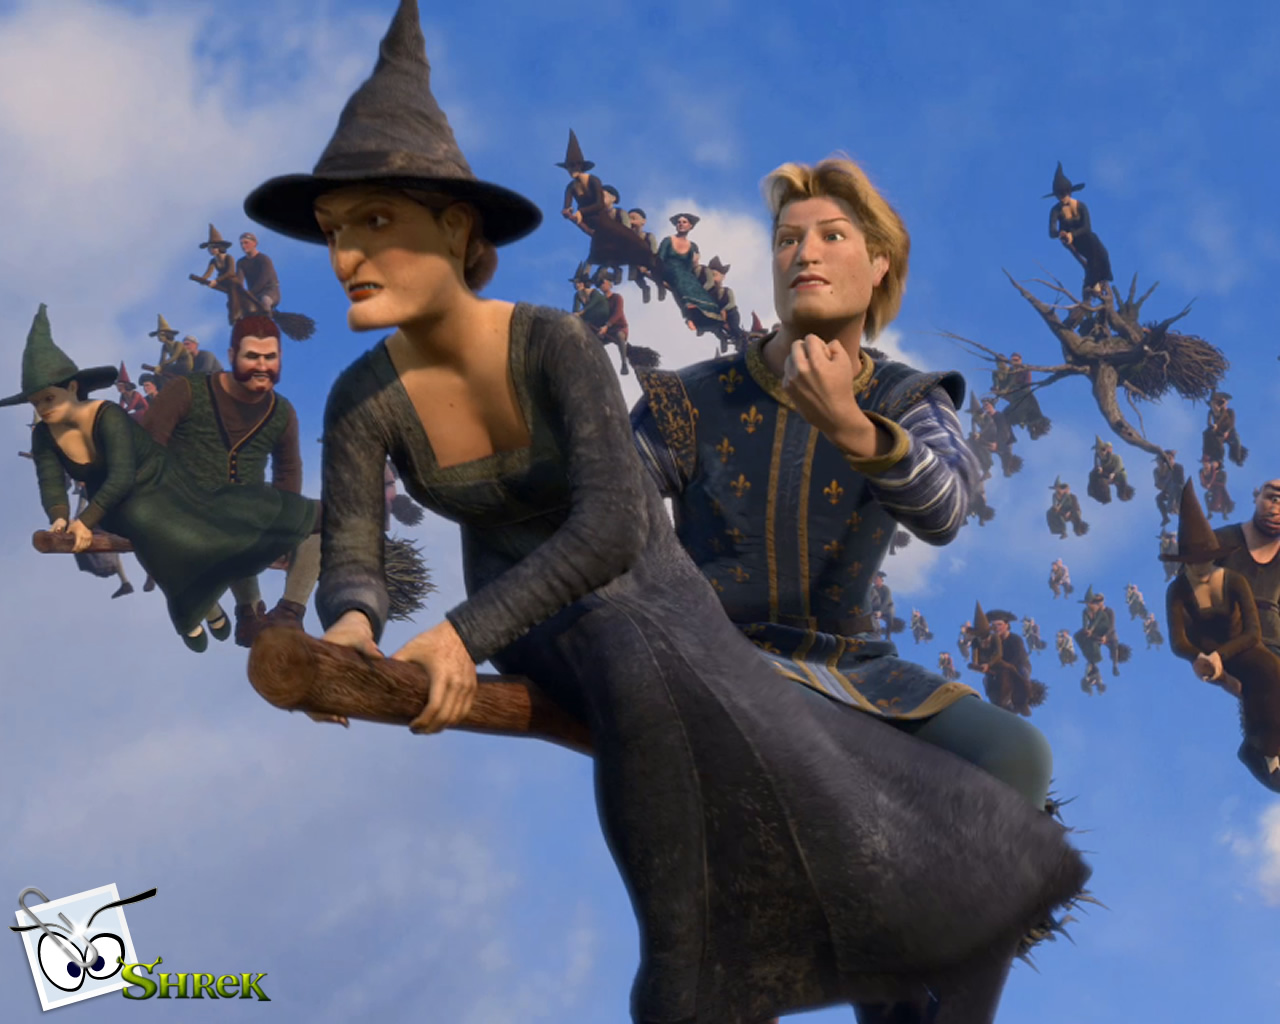 download wallpaper: Shrek 3 – droomprins en de heksen wallpaper